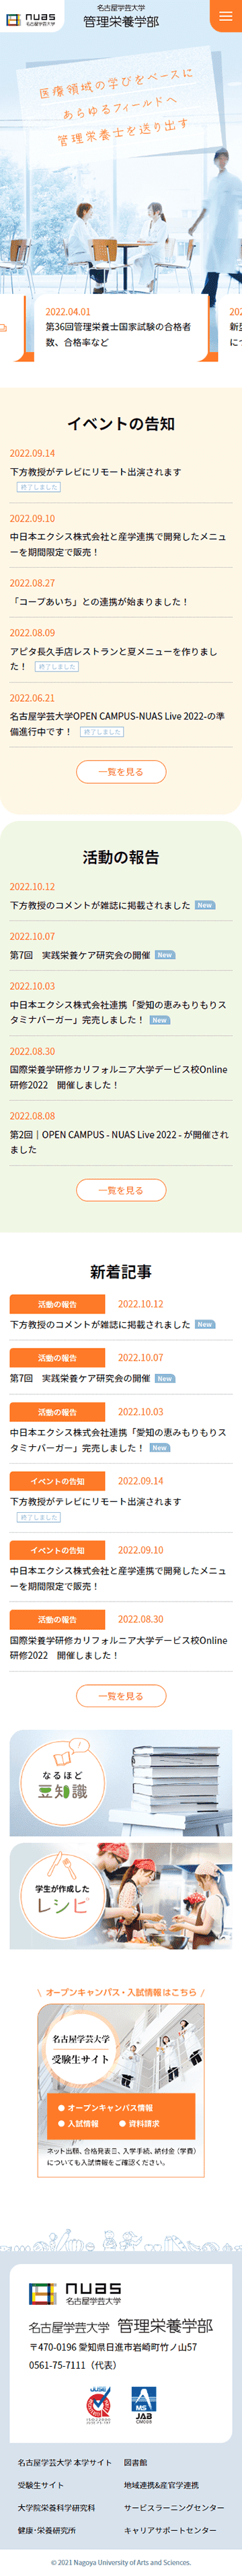 名古屋学芸大学管理栄養学部のホームページ　スマホ版のキャプチャ